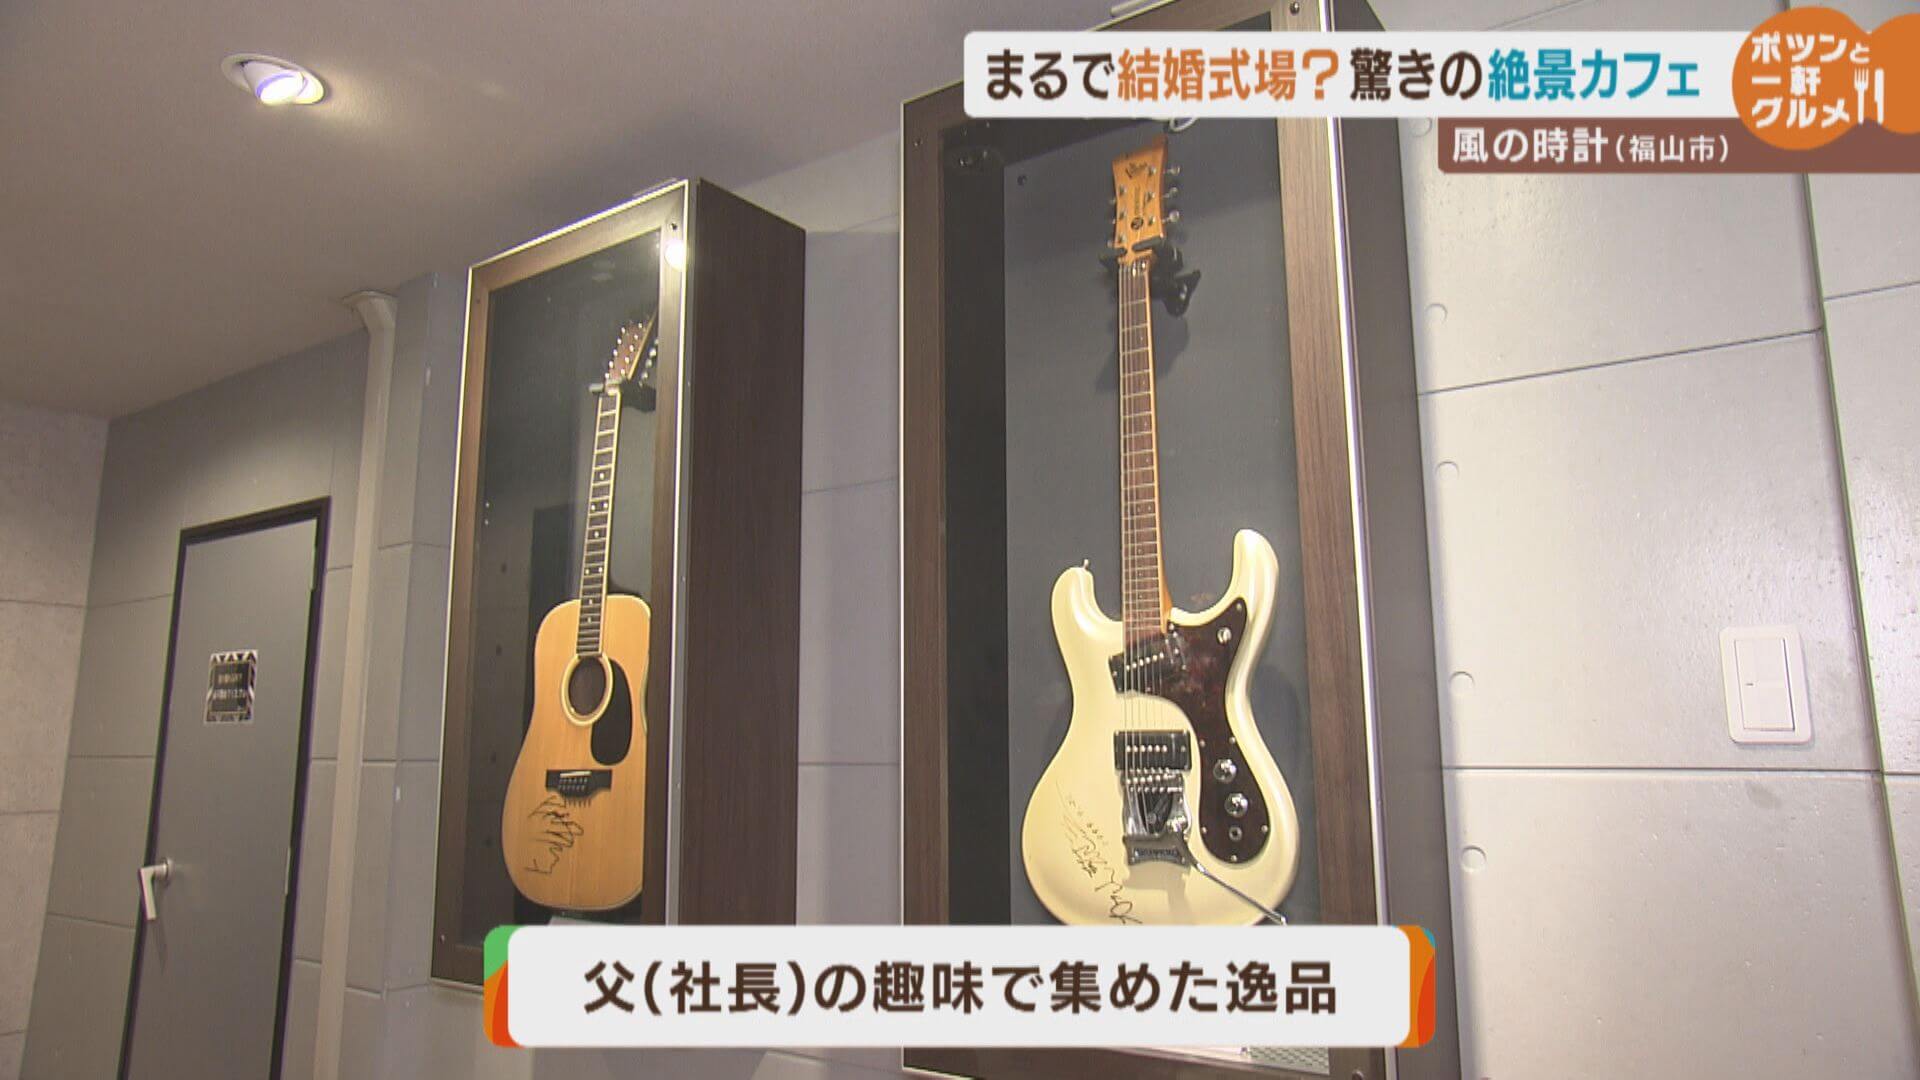 吉田拓郎さん直筆サイン入りギター（左）　　加山雄三さんの直筆サイン入りエレキギター（右）